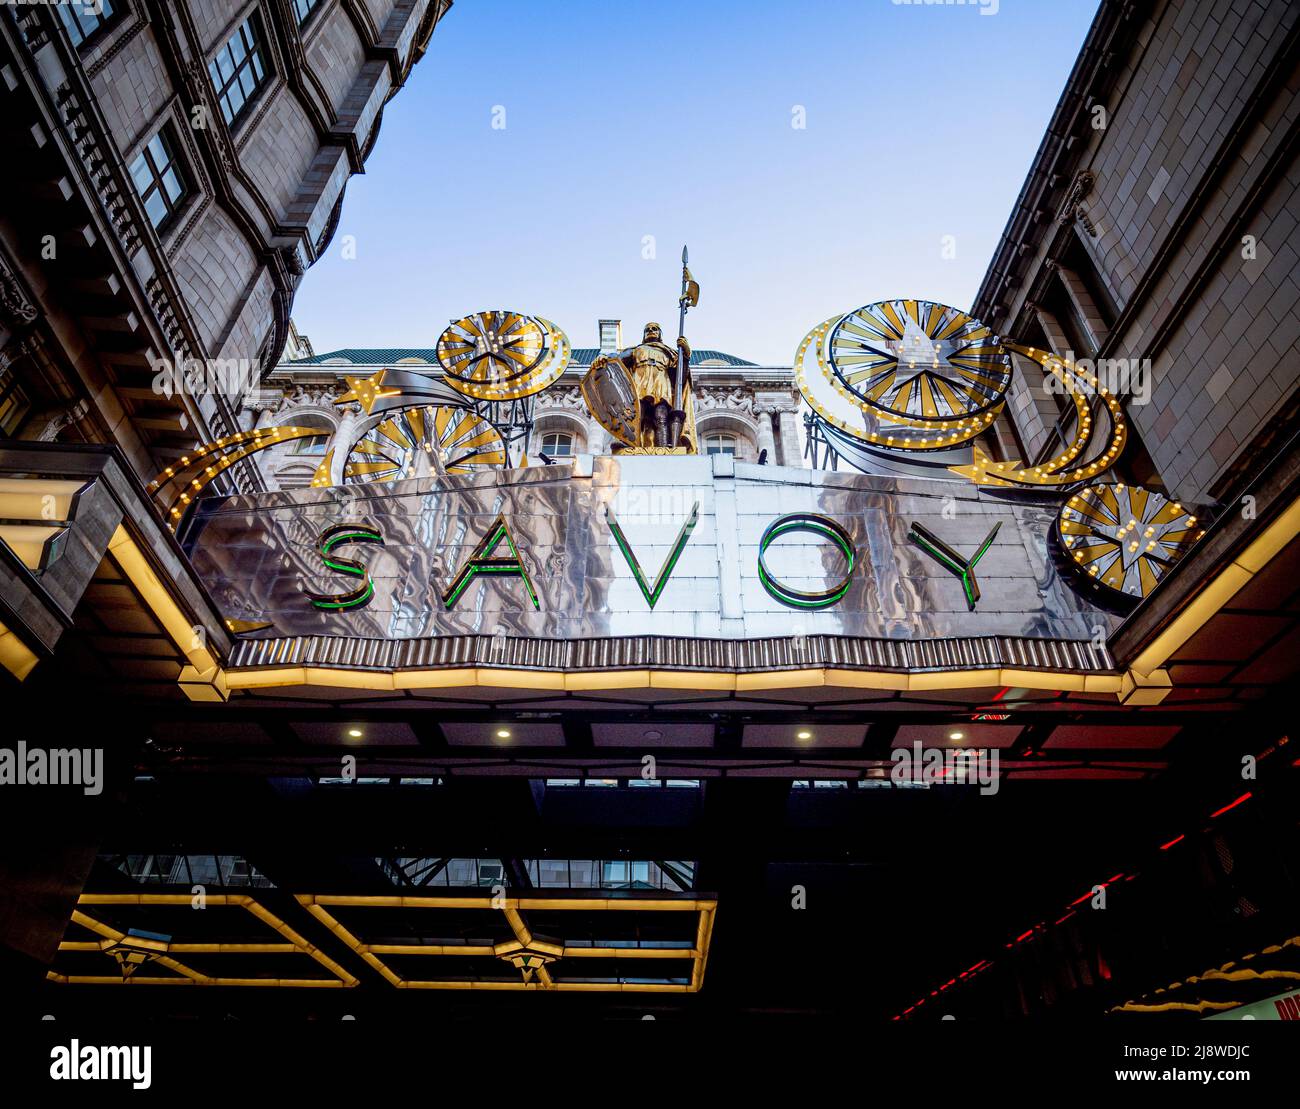 L'iconico baldacchino d'argento del Savoy Hotel con decorazioni natalizie illuminate. Londra. Foto Stock